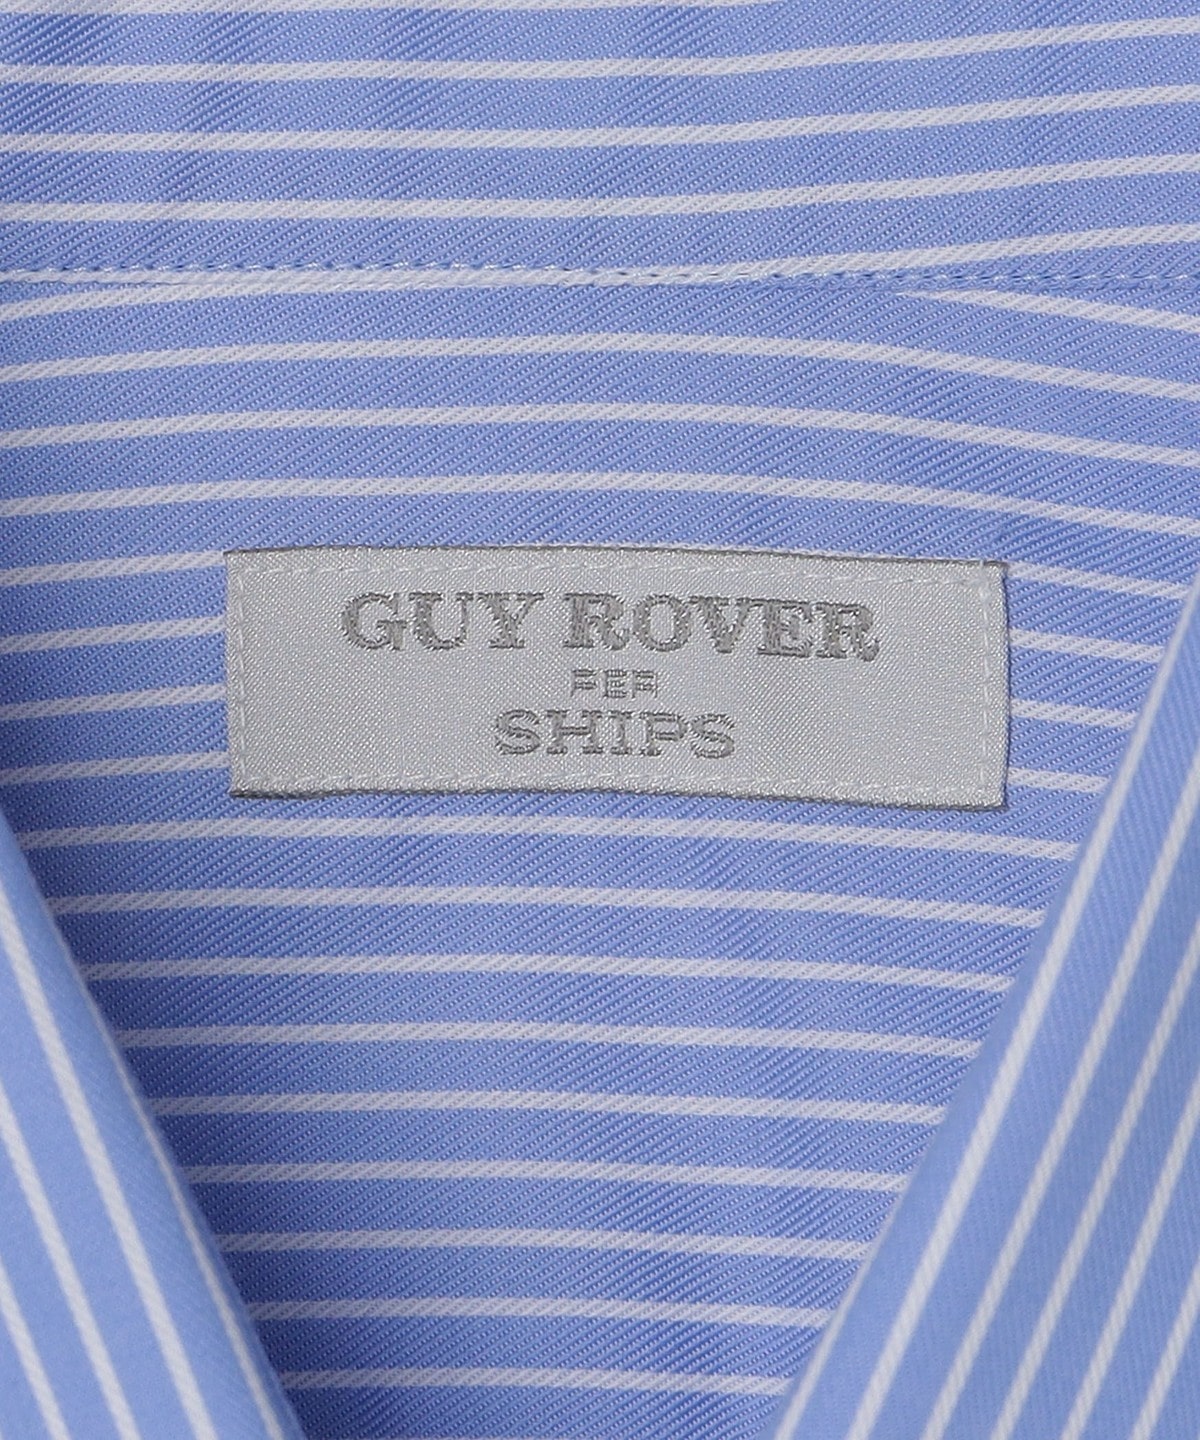 ギローバー GUY ROVER SHIPS別注 ストライプ ワイドカラーシャツ ブルーxホワイト【サイズ40】【メンズ】